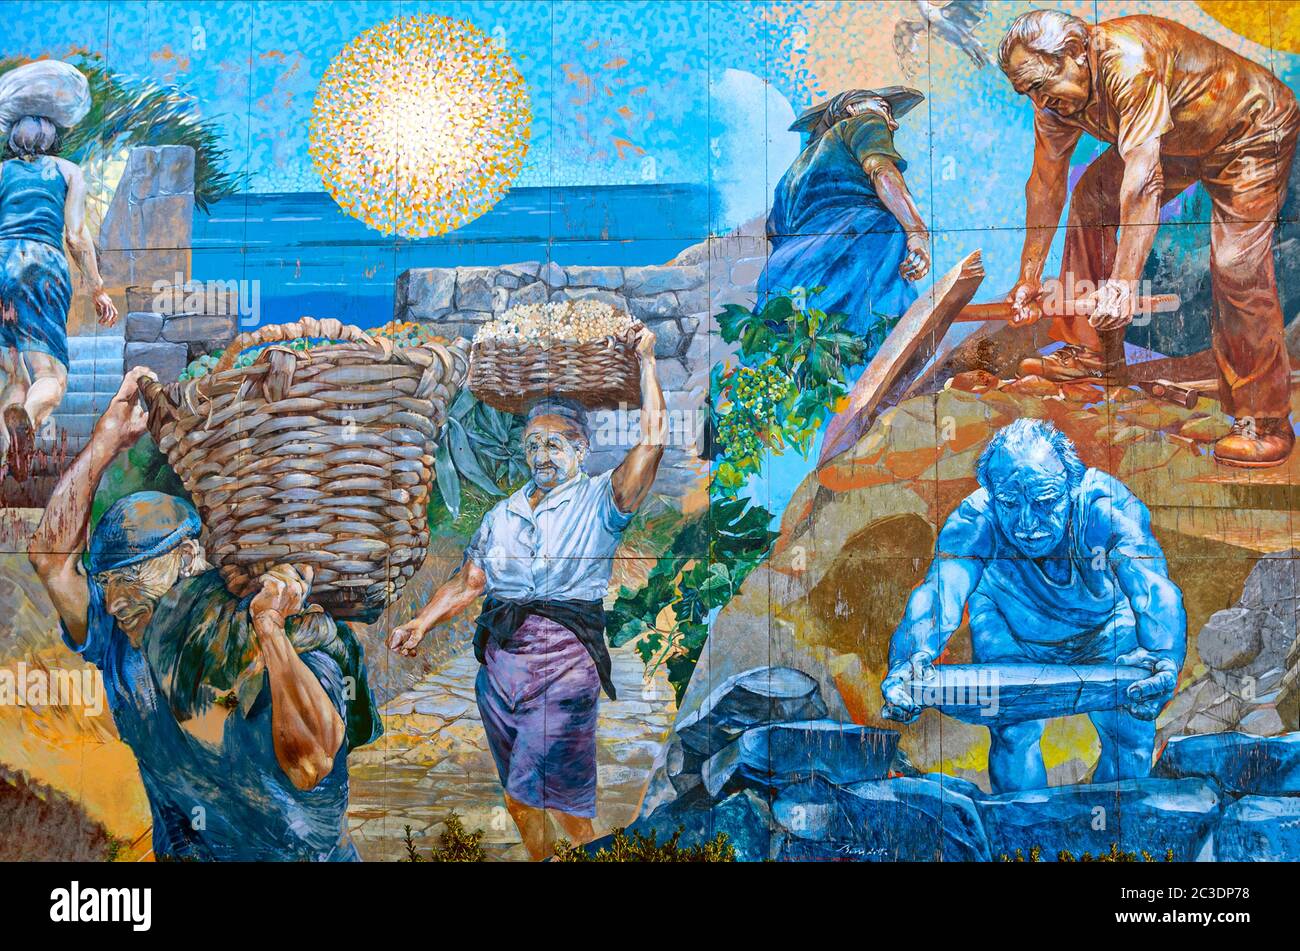 Colourful murals in Riomaggiore, Cinque Terre, Liguria, Italy Stock Photo